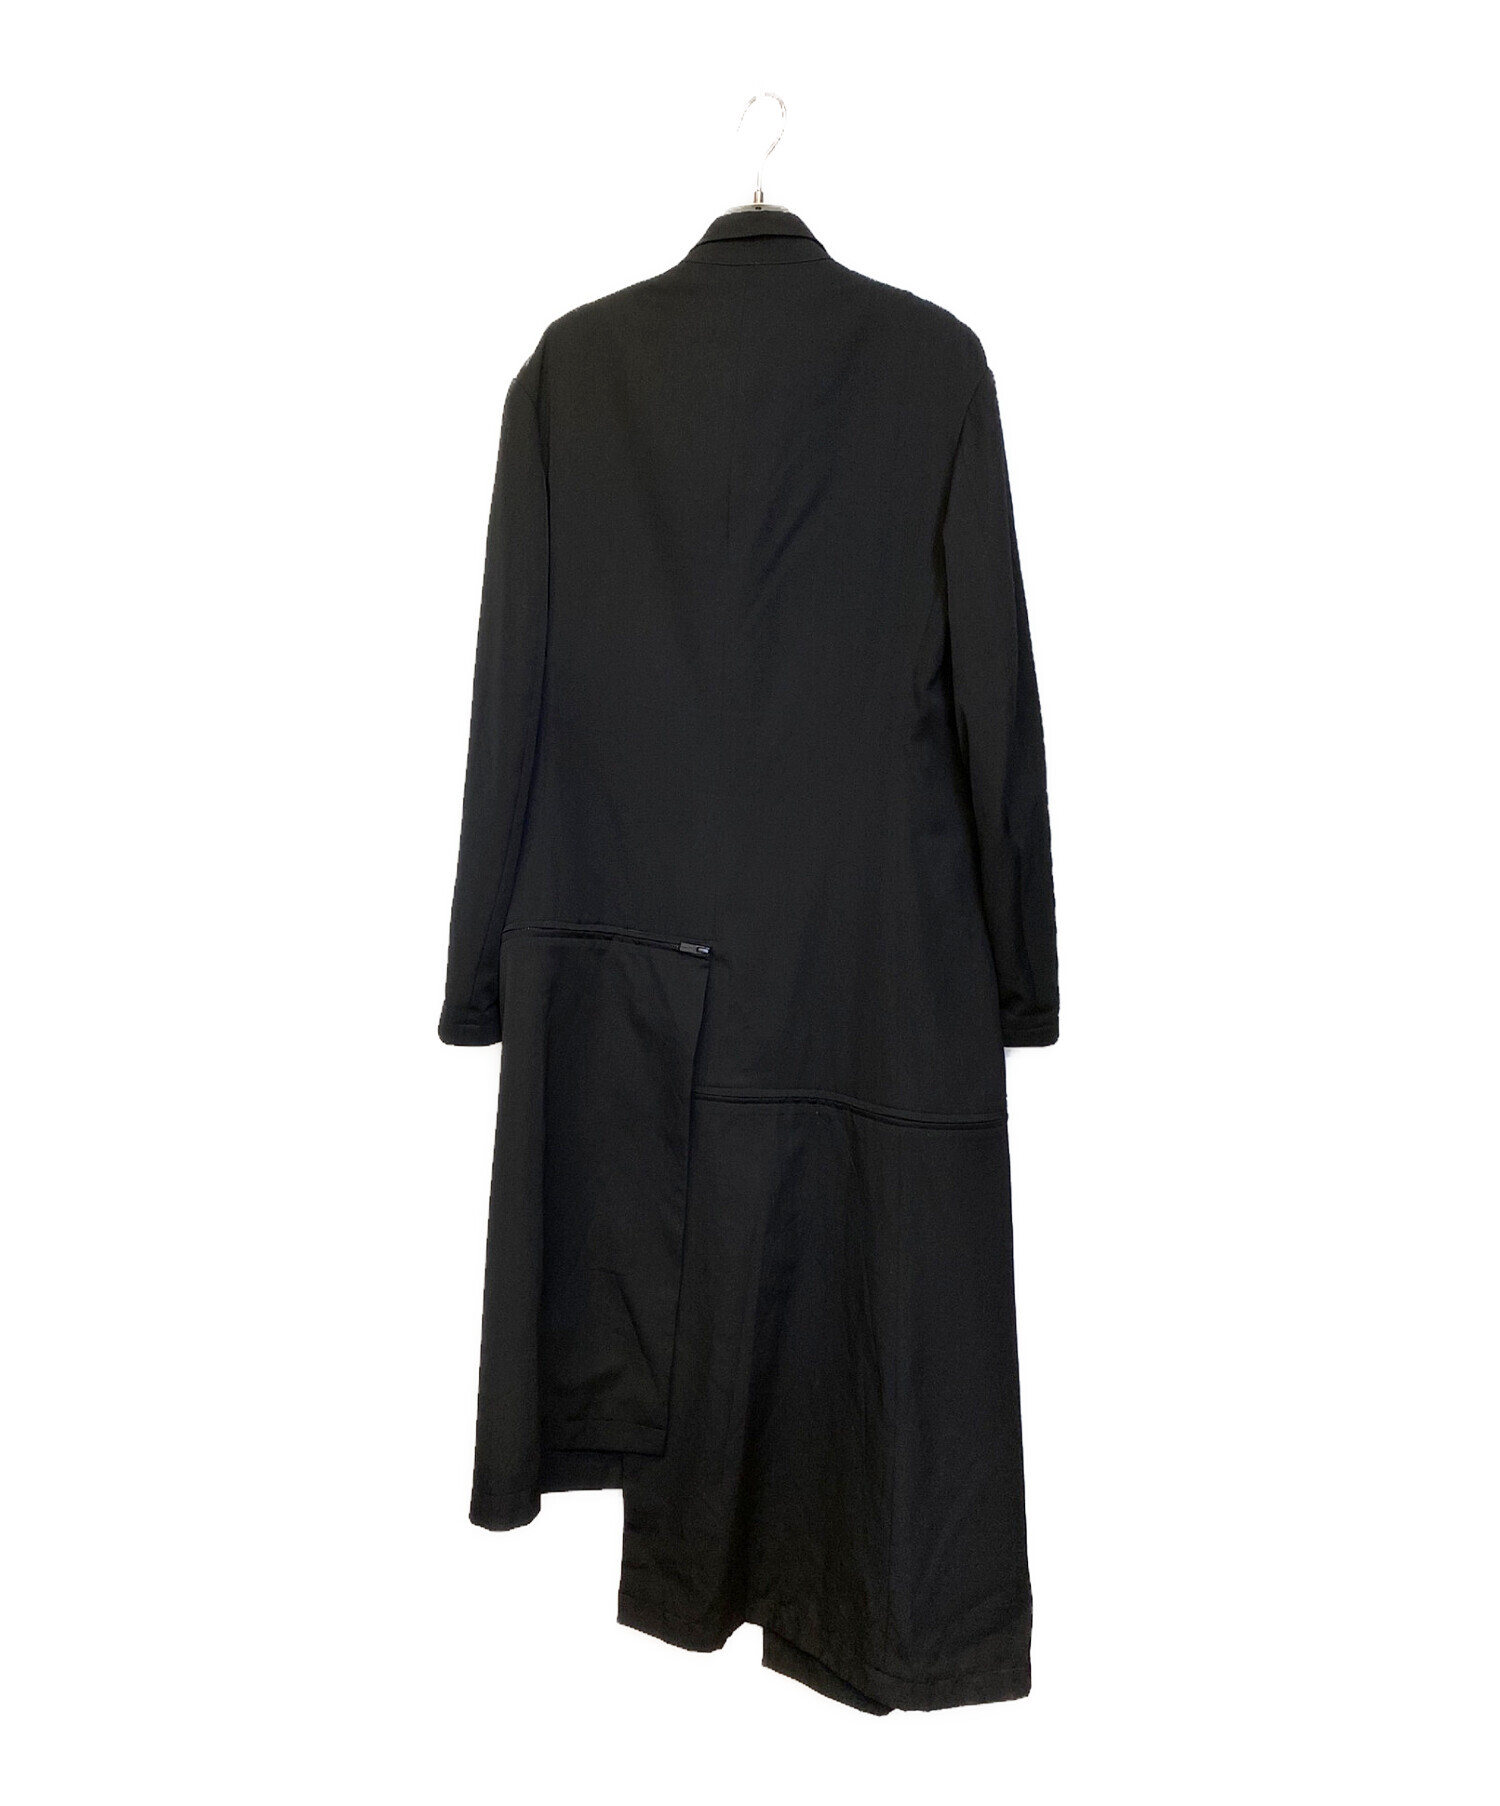 yohji yamamoto ウールギャバジン コート sizeS身幅62cm